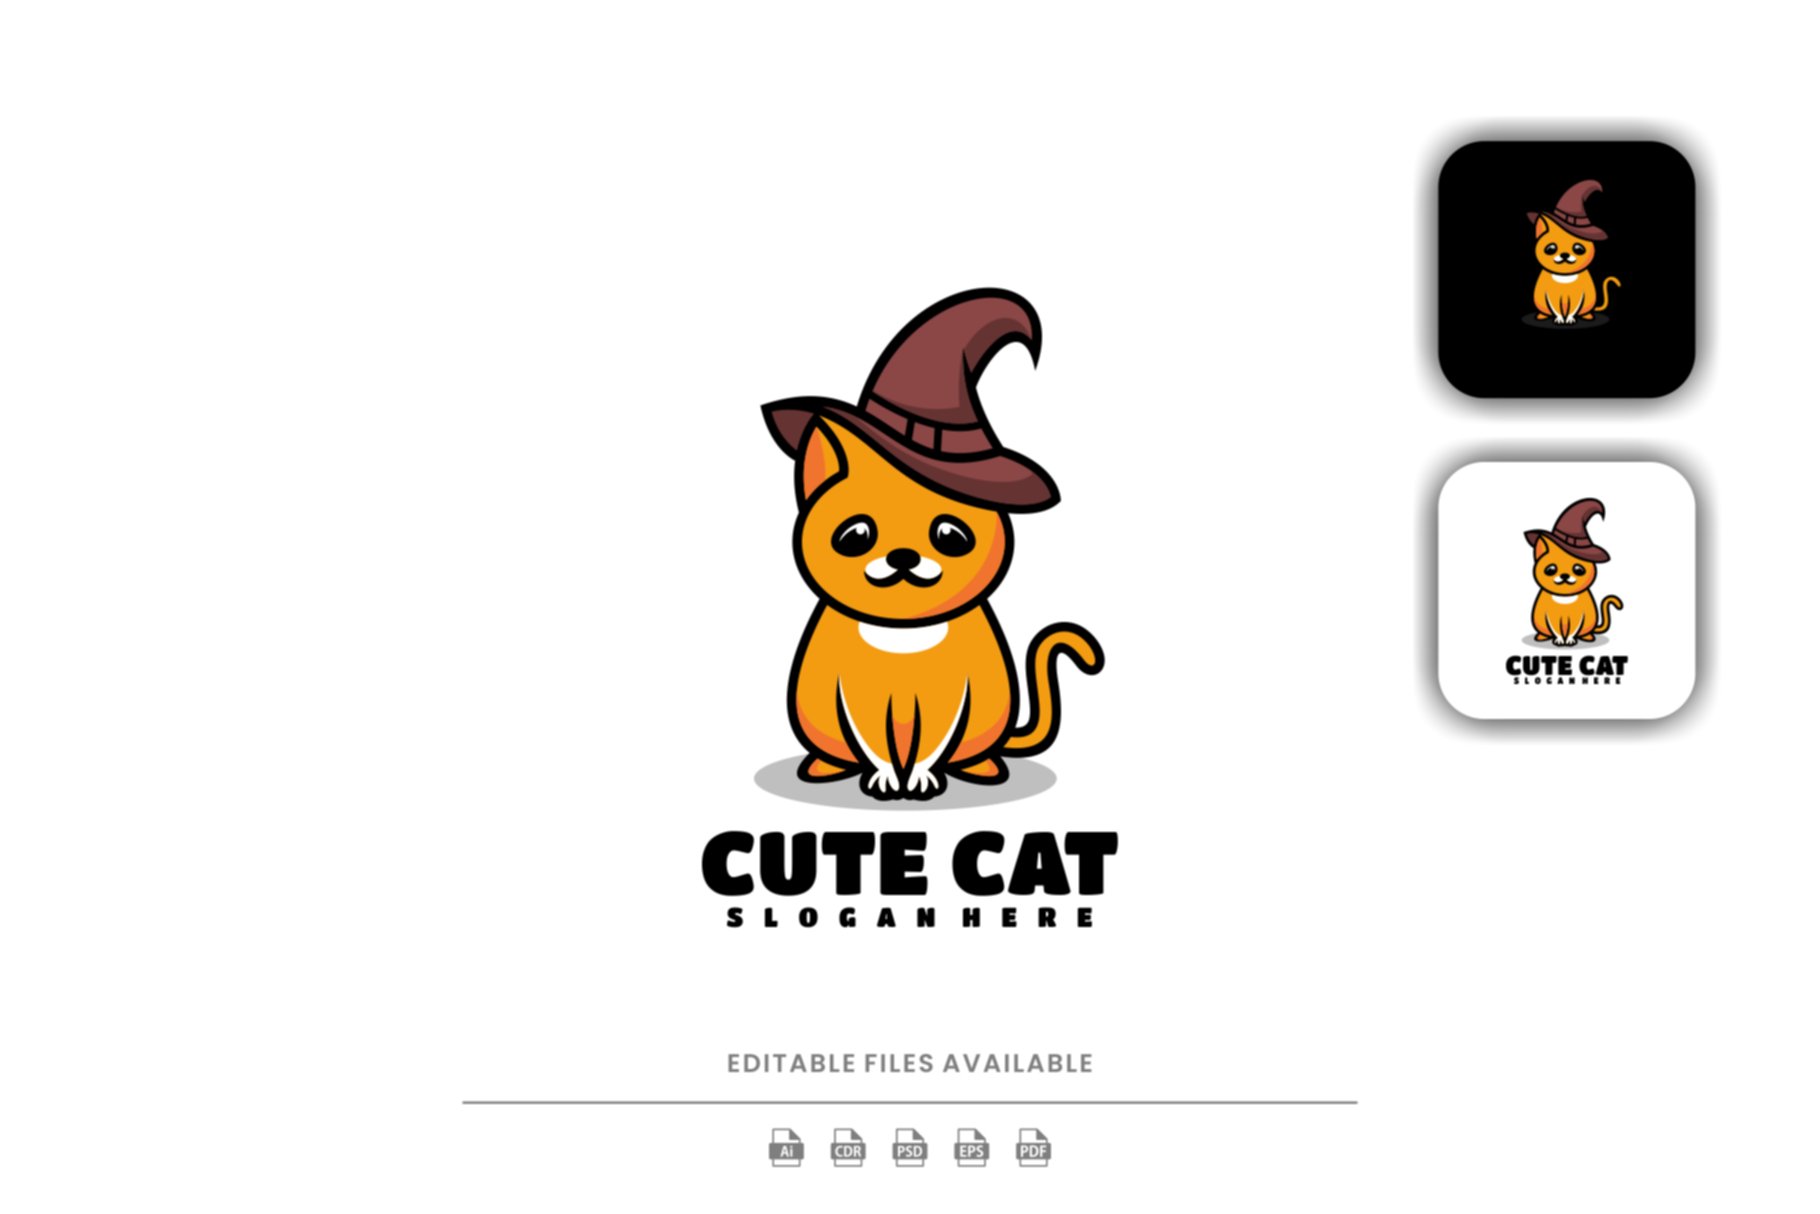 Cute Cat Cartoon Logo cover image.